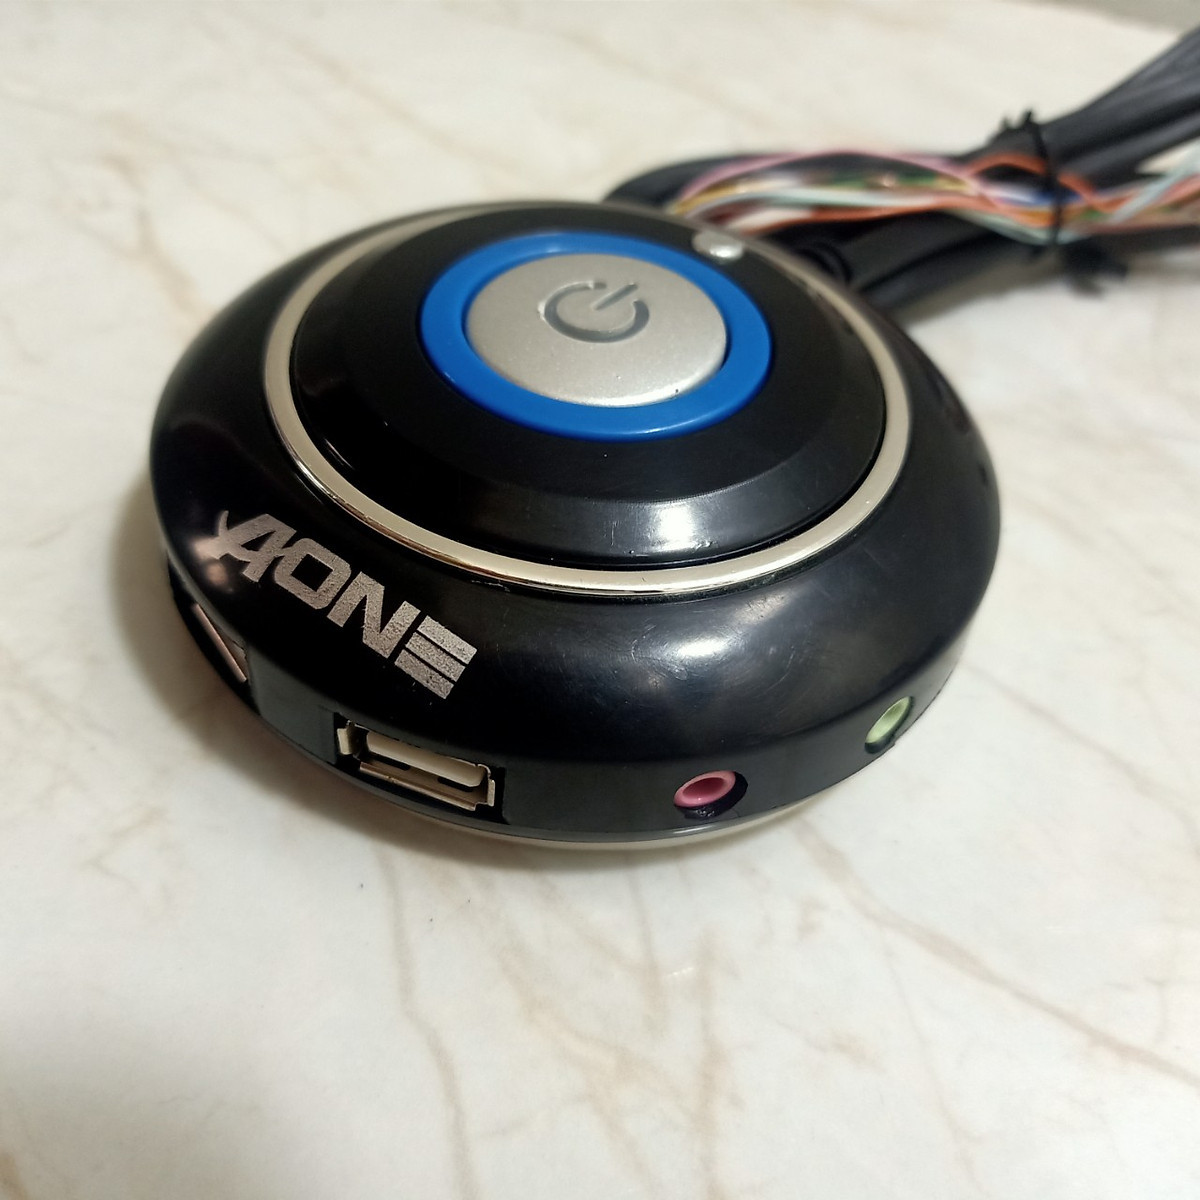 NÚT NGUỒN AONE -LED- USB-AUDIO -tròn vặn ốc